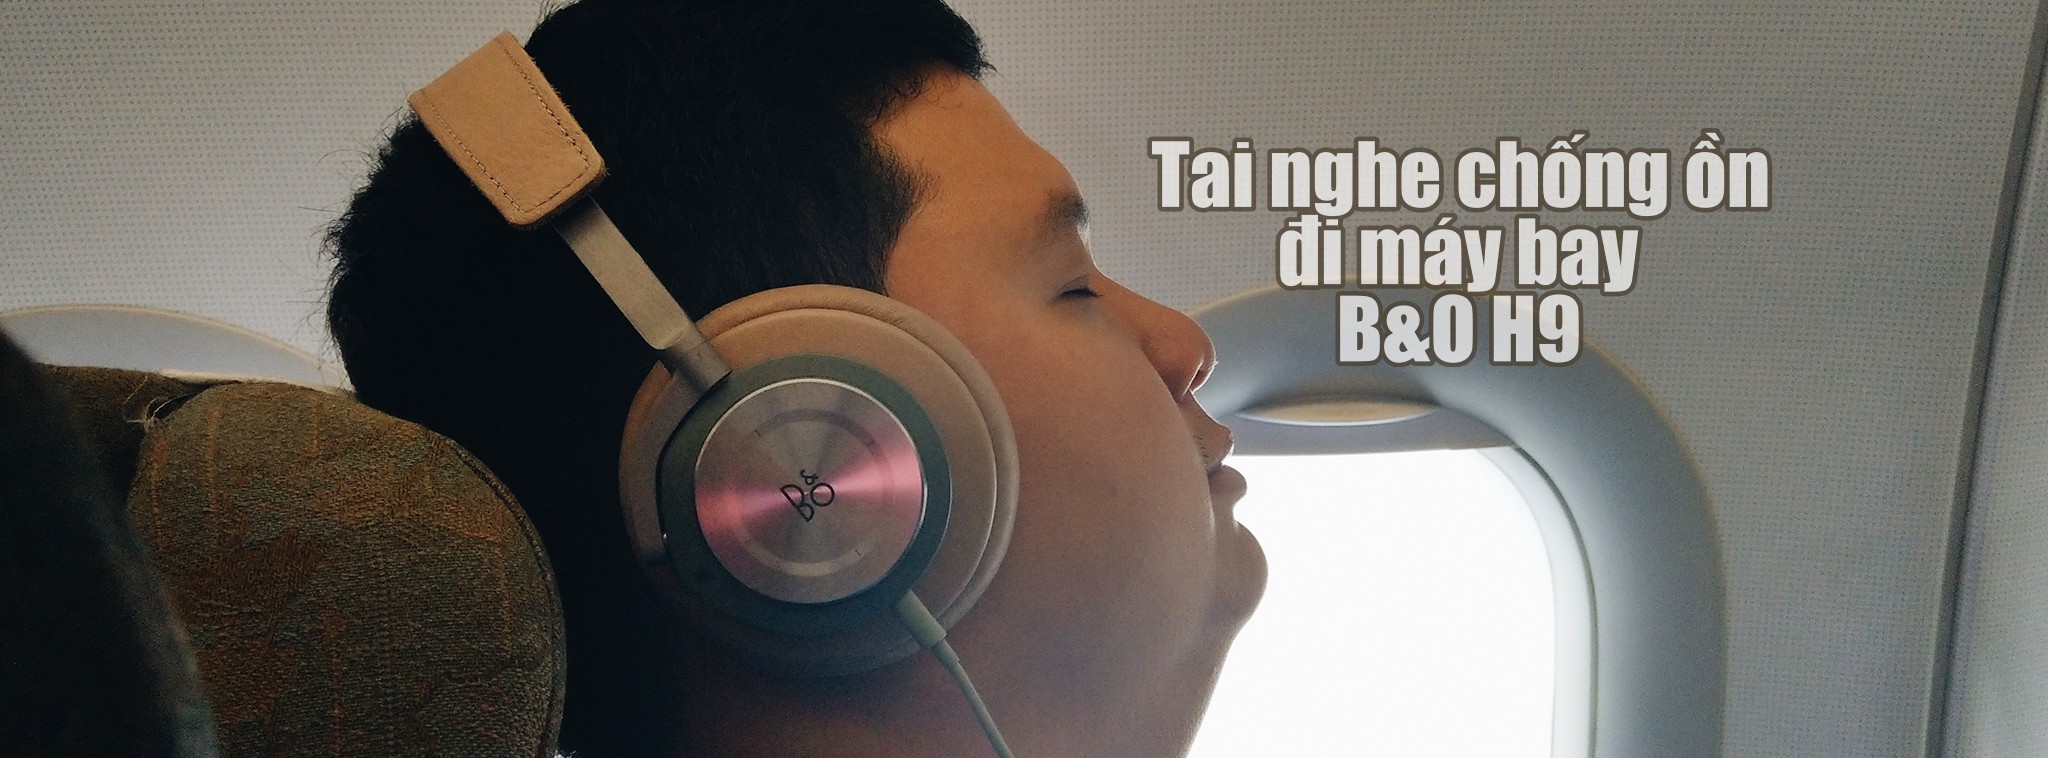 Nhớ cầm tai nghe chống ồn khi đi máy bay